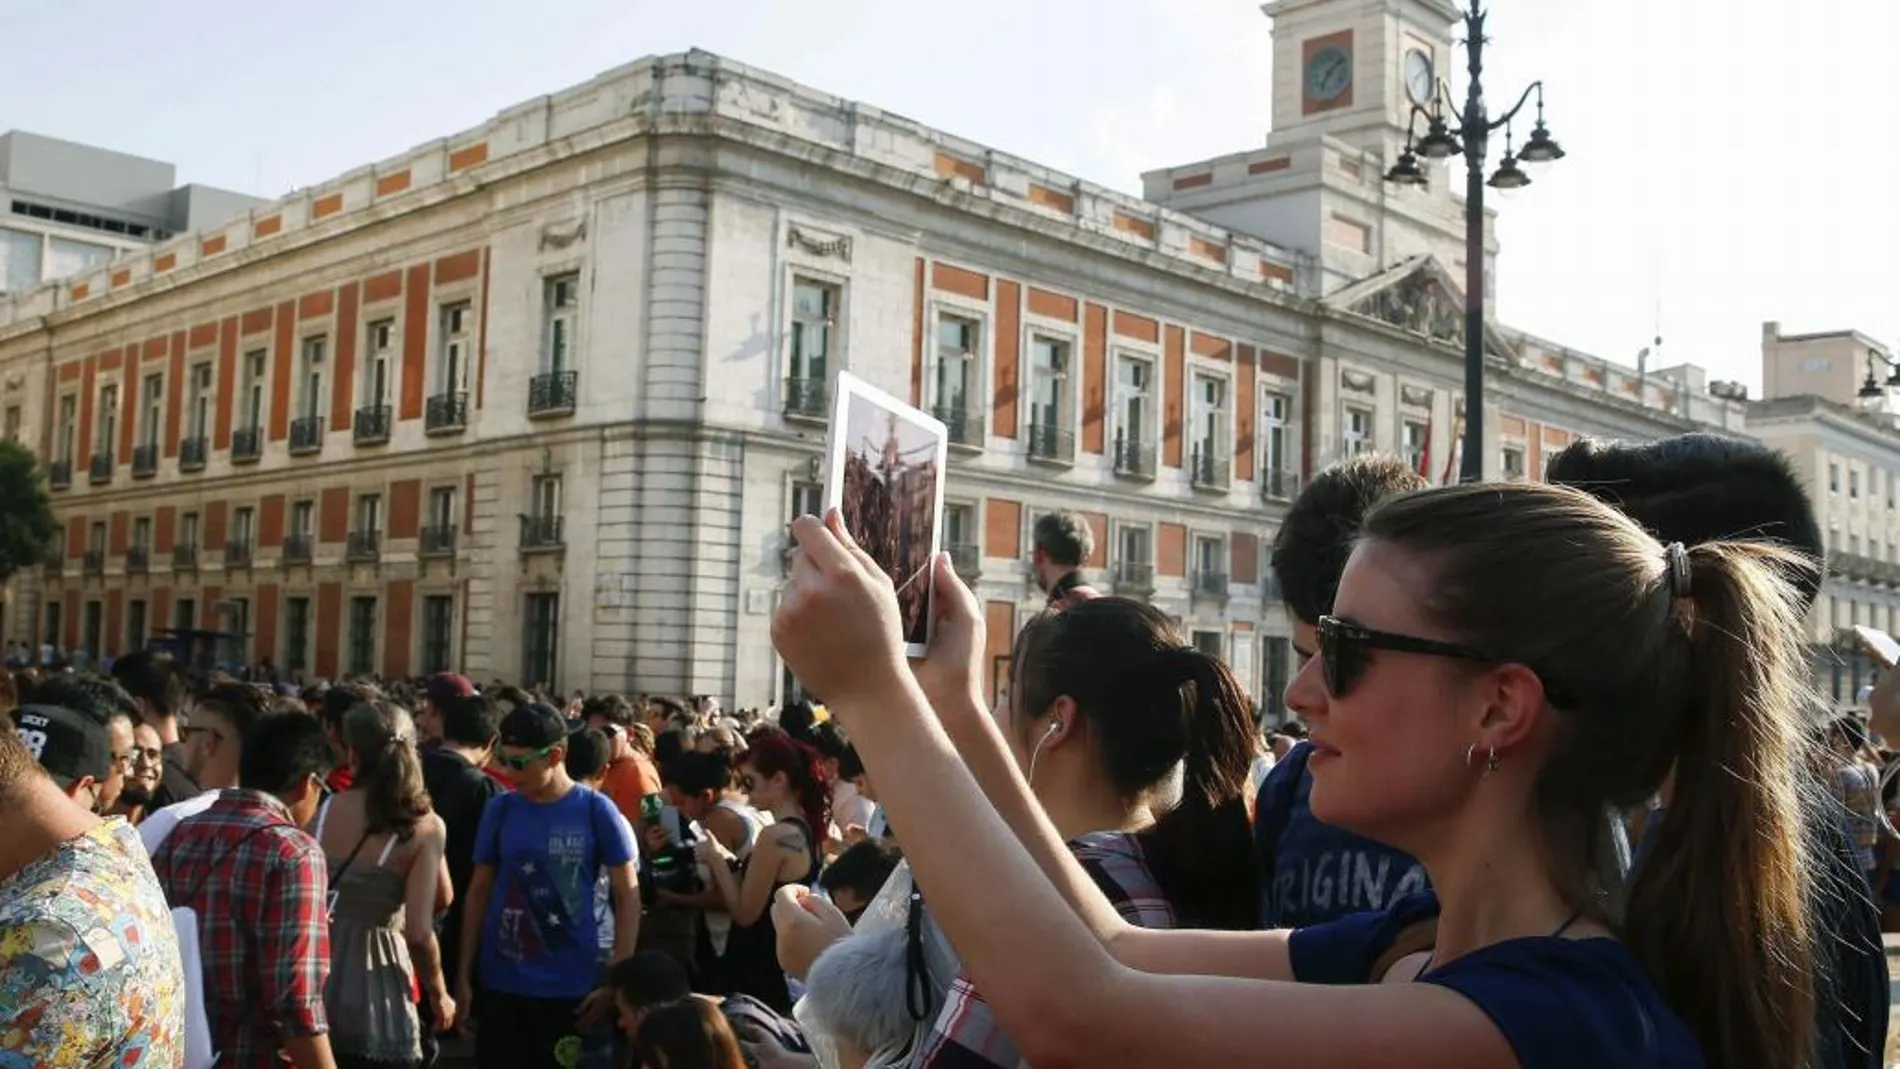 Más de 5000 personas se dan cita en la Puerta del Sol para cazar pokemons en la gran quedada de Pokémon Go Madrid.